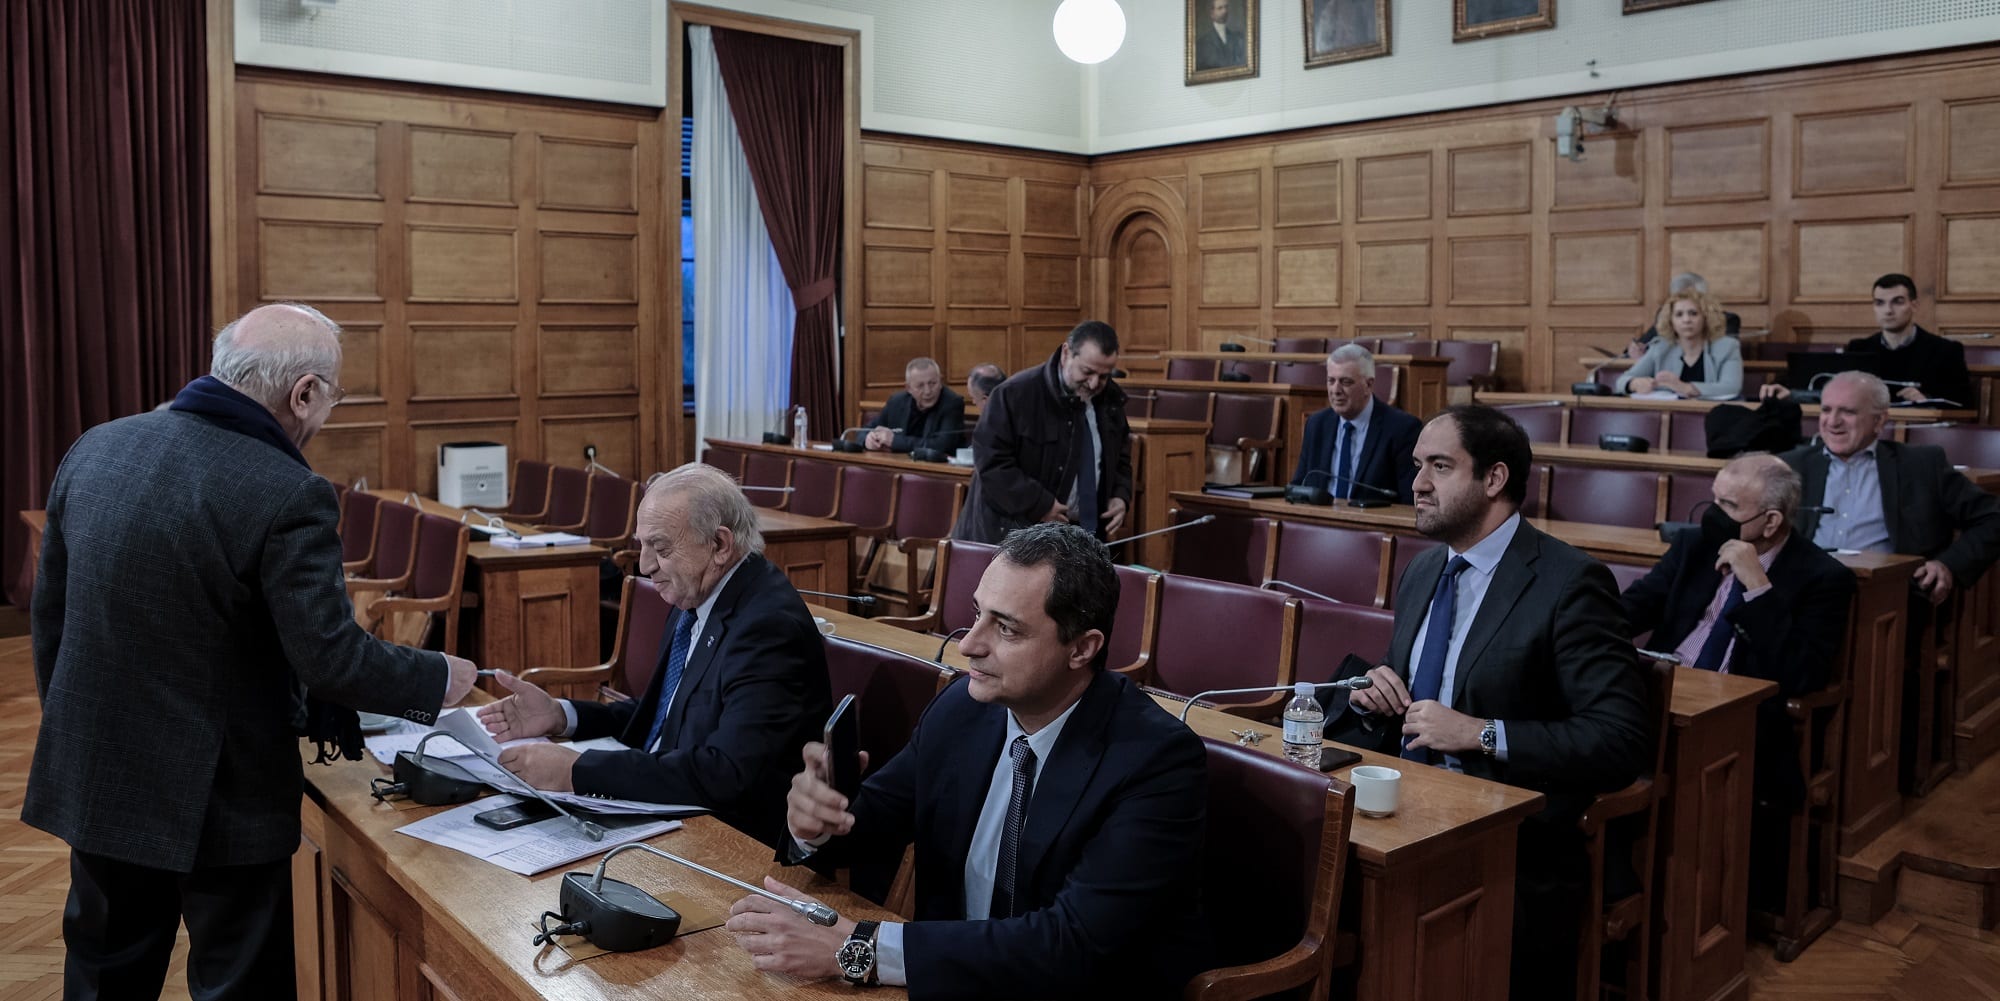 Οι βουλευτές του ΣΥΡΙΖΑ αποχώρησαν πριν την ψήφιση νομοσχεδίου στη Βουλή